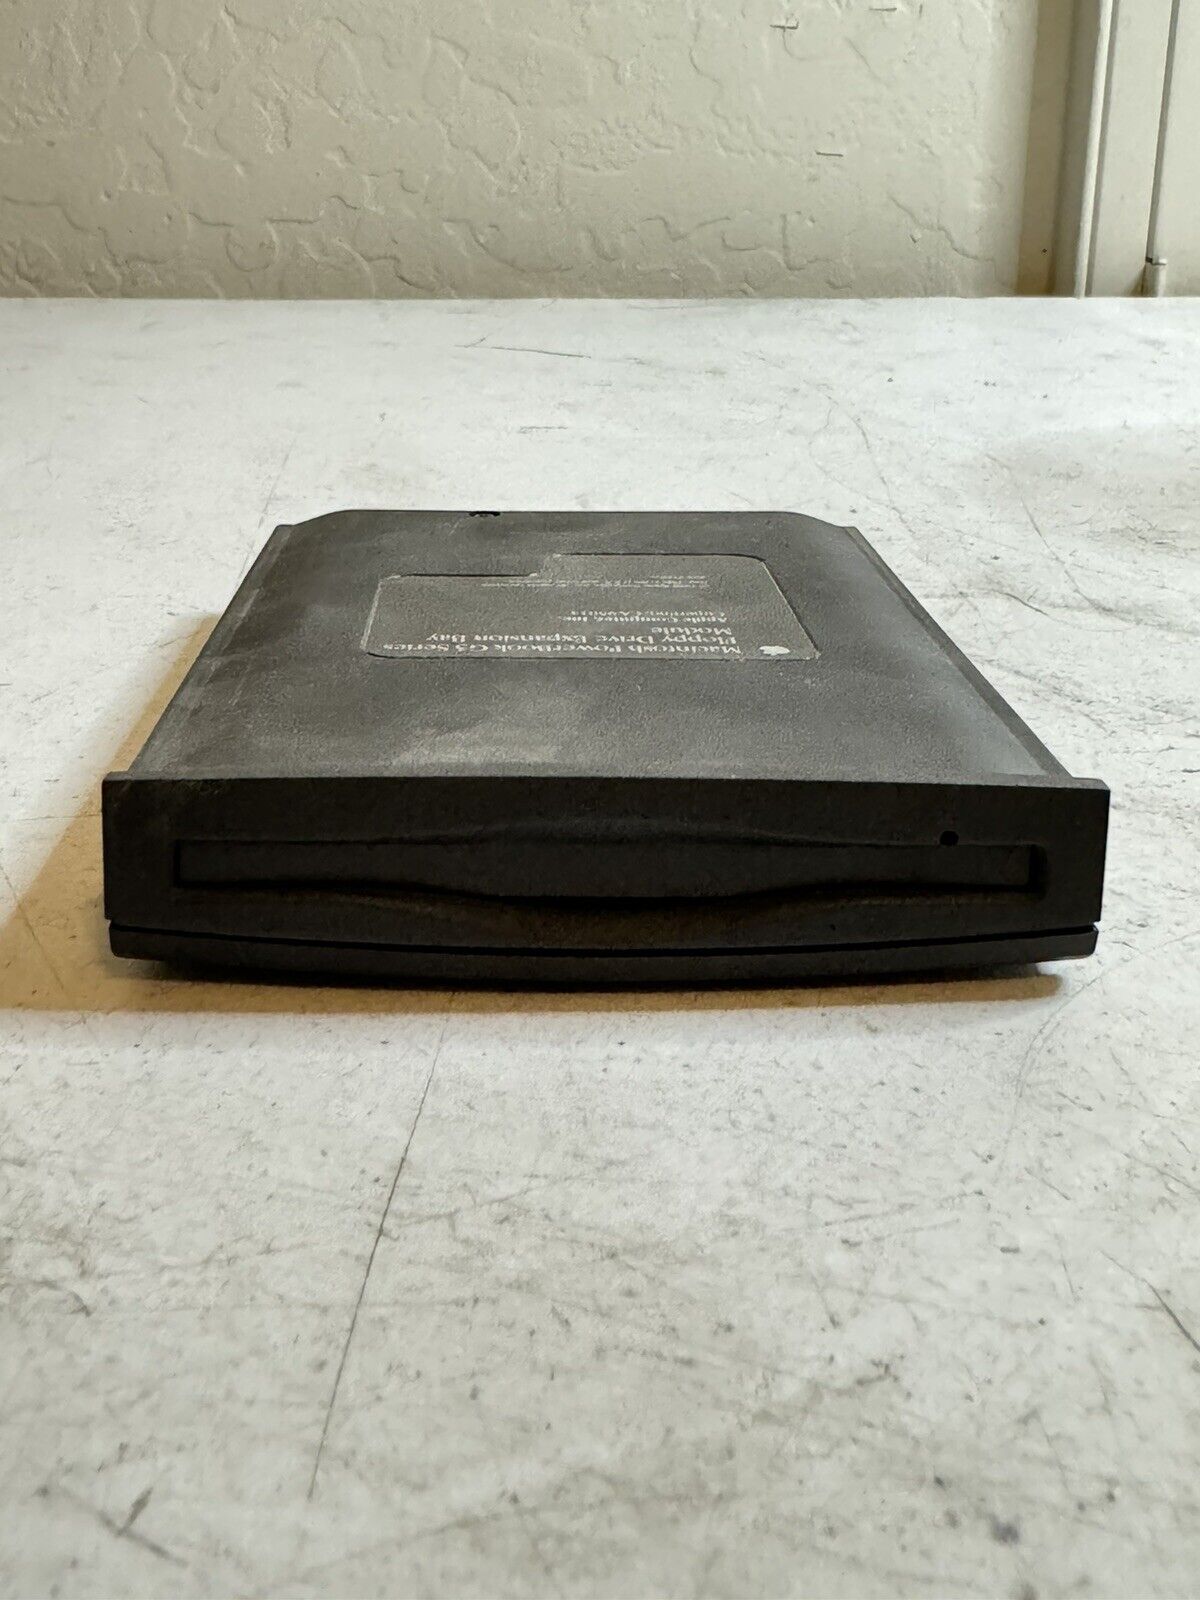 Genuine Vintage Apple Powerbook G3 Wallstreet Floppy Drive